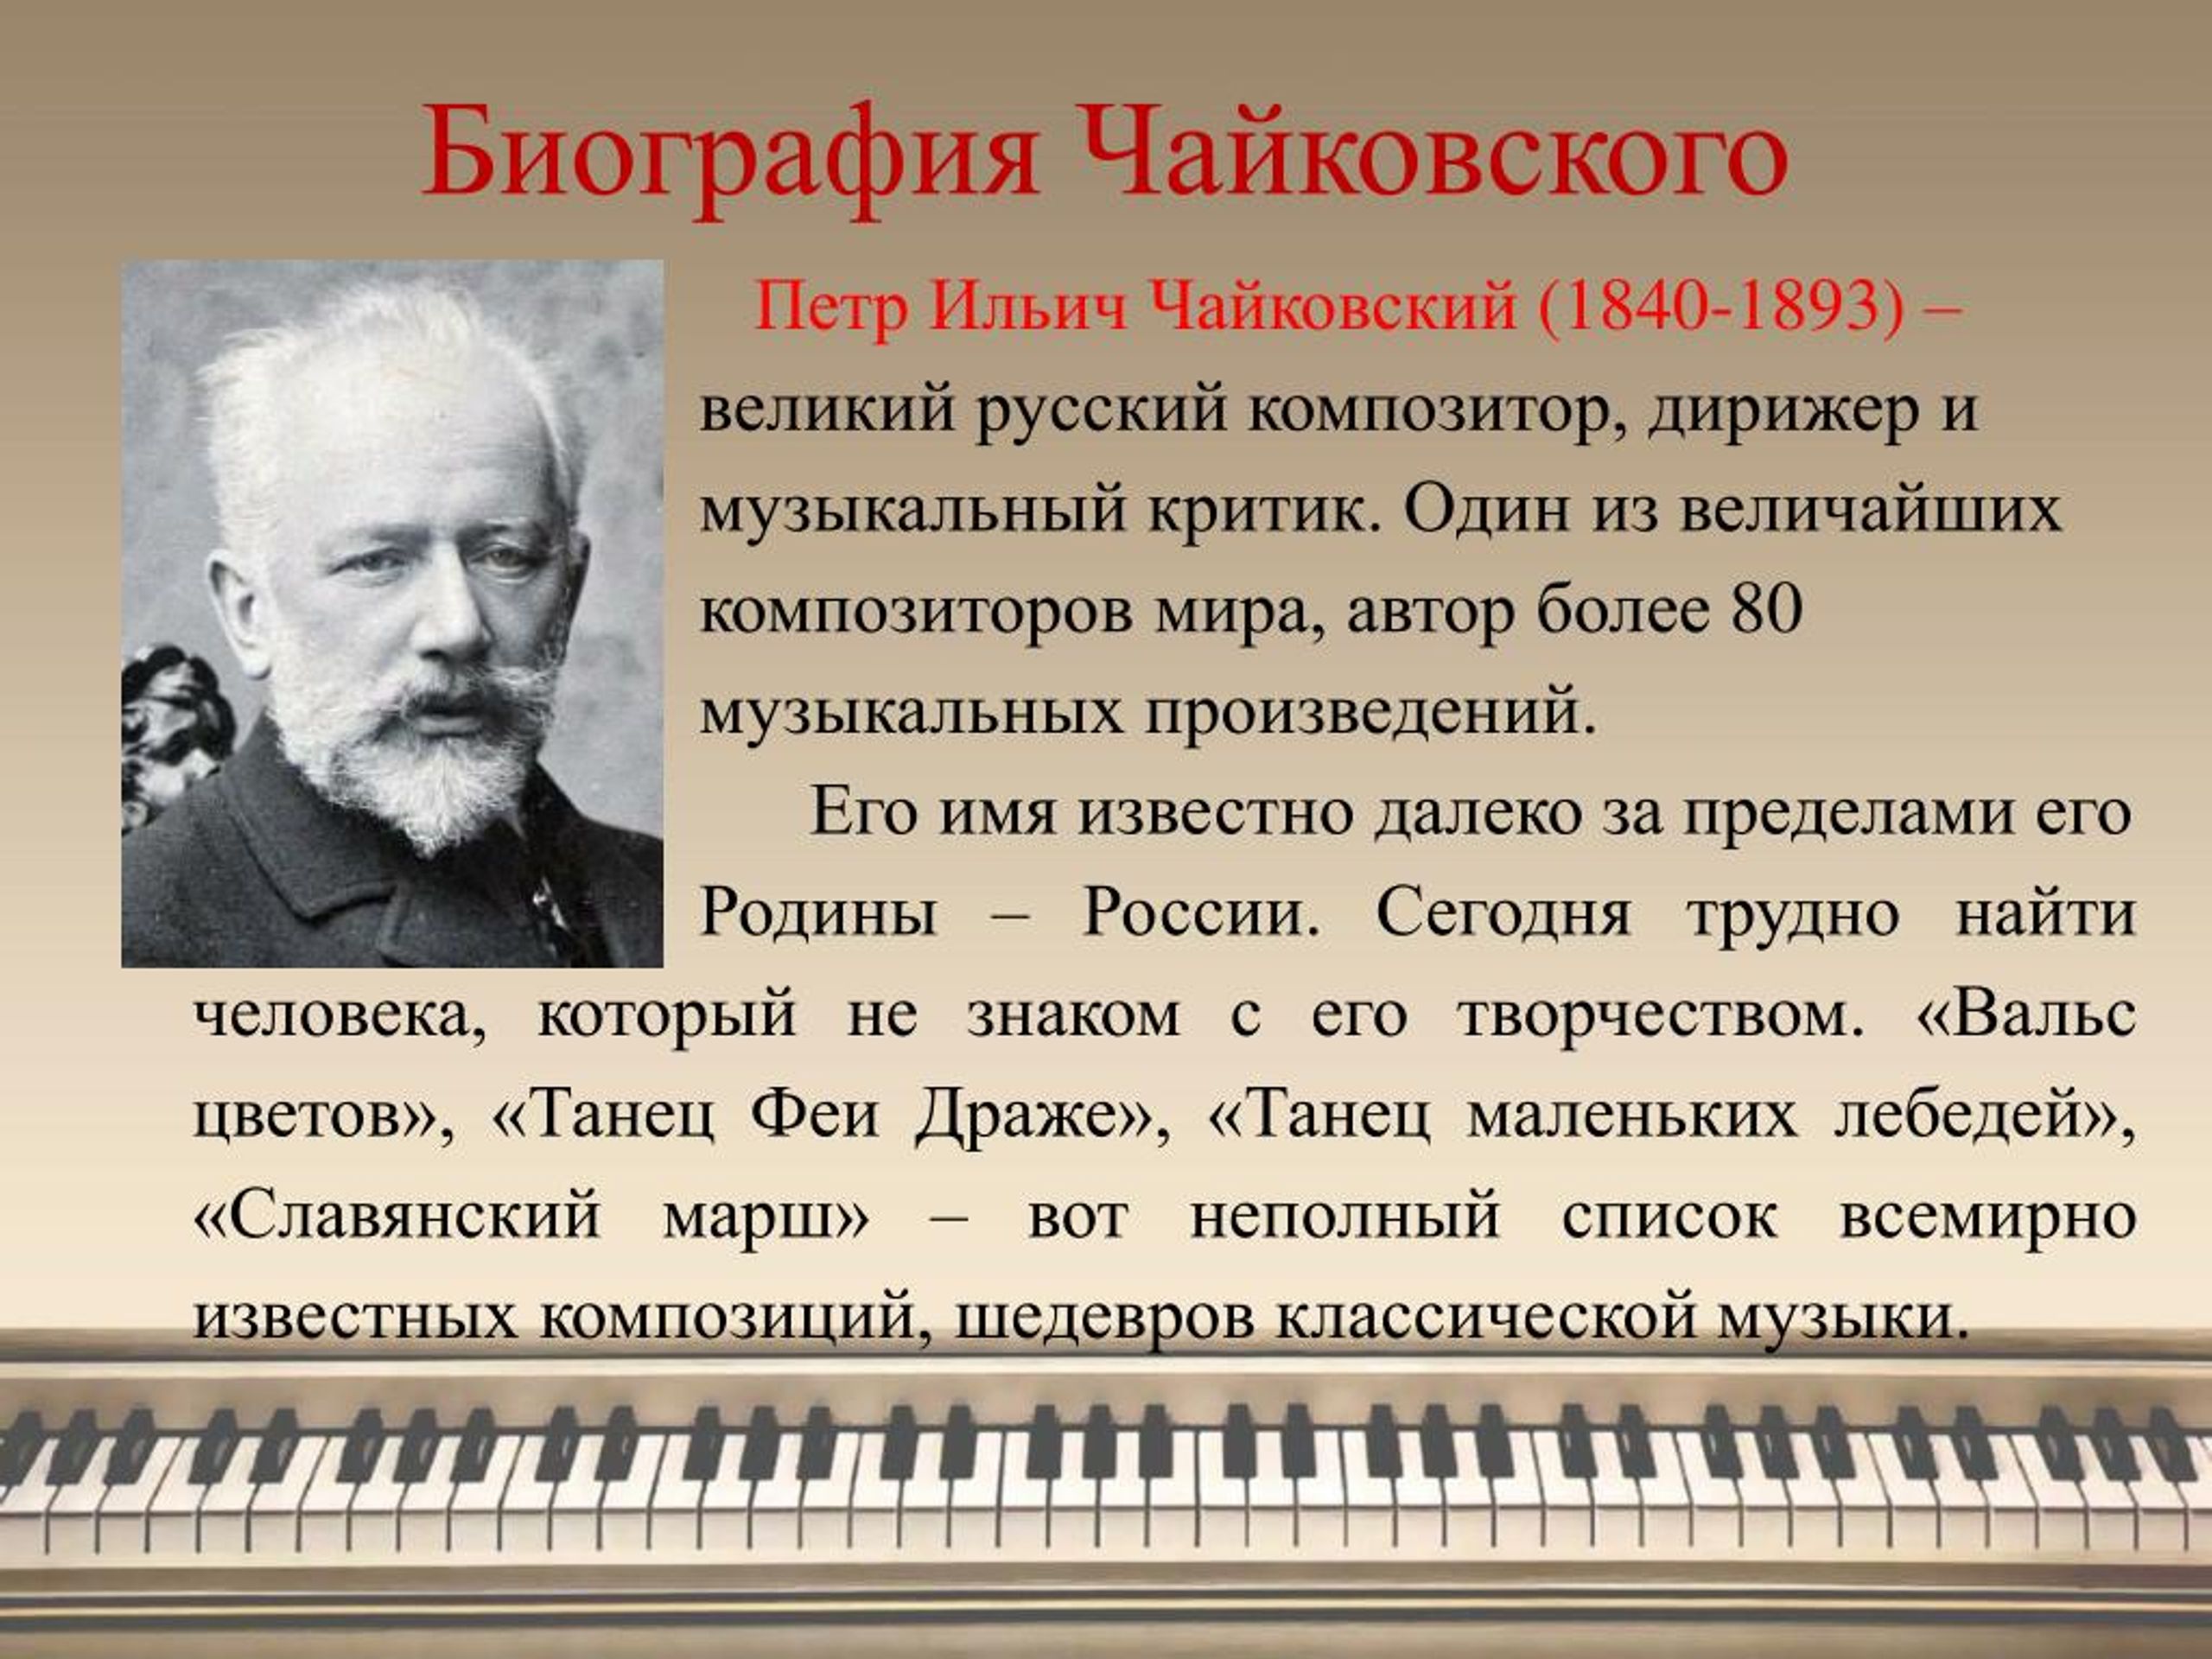 Музыкальное произведение россии